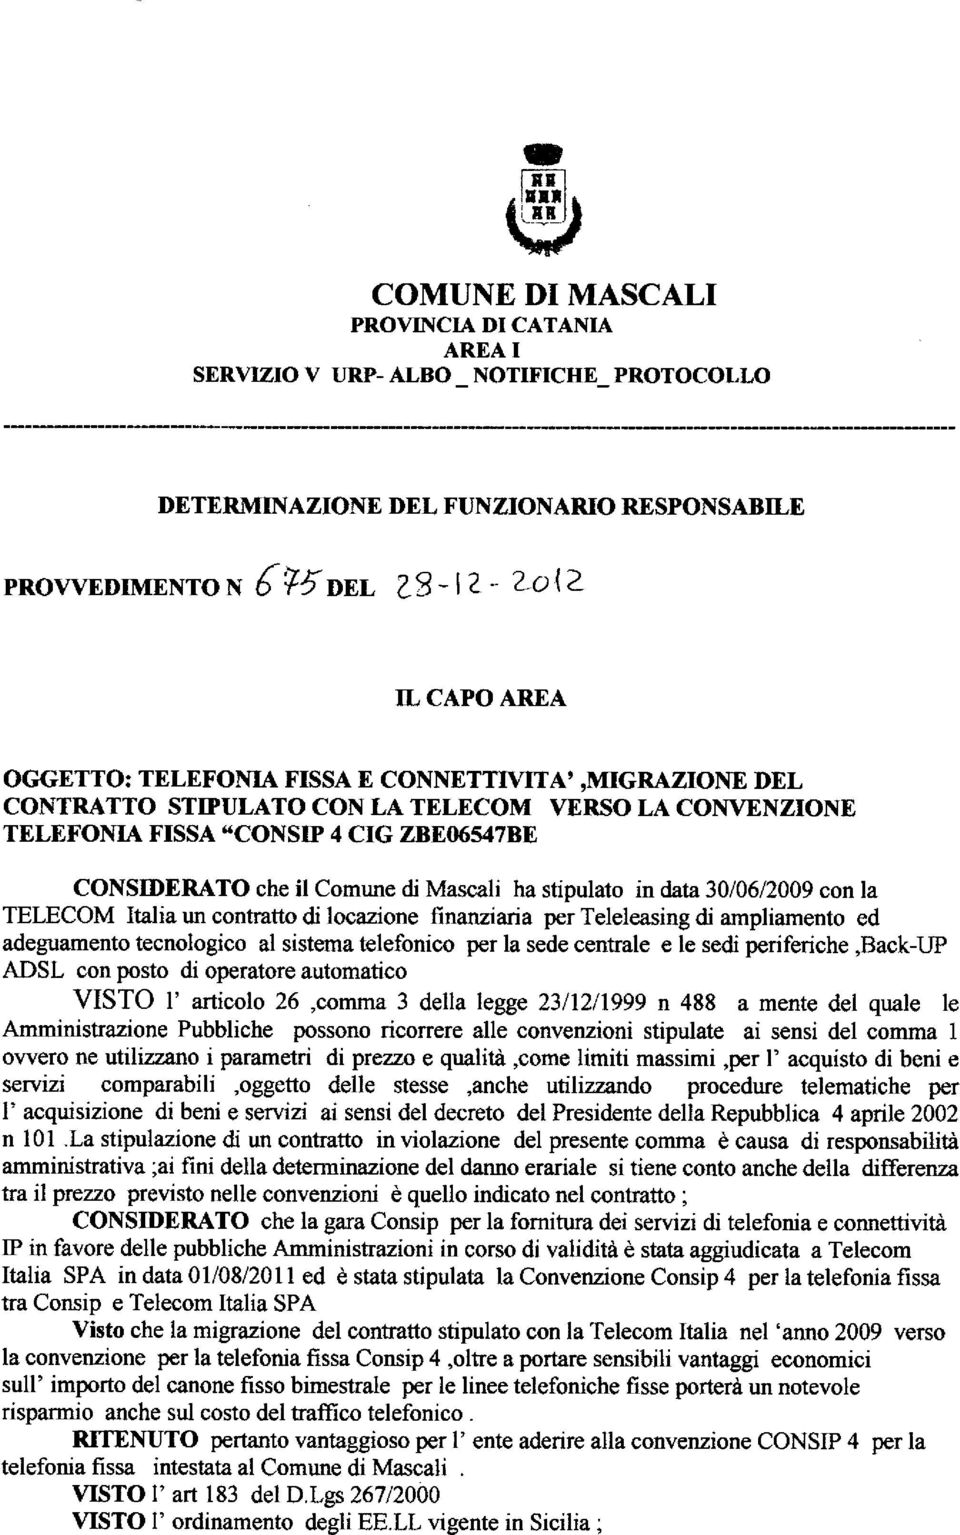 E06/547BE CONSIDERATO che il Comune di Mascali ha stipulato in data 30/06/2009 con la TELECOM Italia un contratto di locazione finanziaria per Teleleasing di ampliamento ed adeguamento tecnologico al